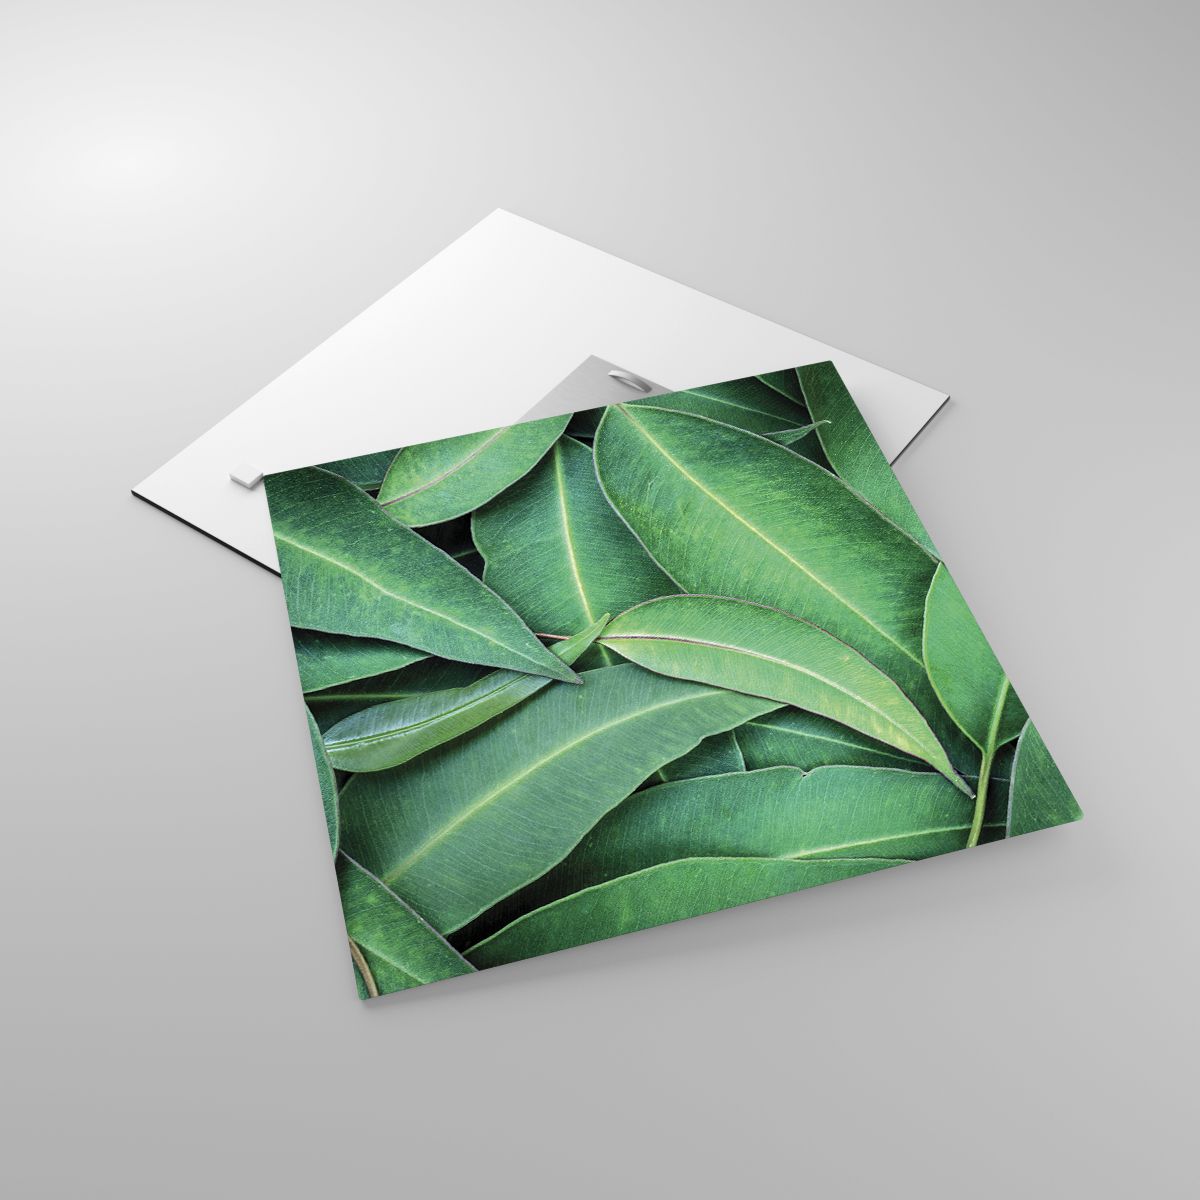 Glasbild Laub, Glasbild Eukalyptus, Glasbild Natur, Glasbild Tropische Pflanze, Glasbild Flora